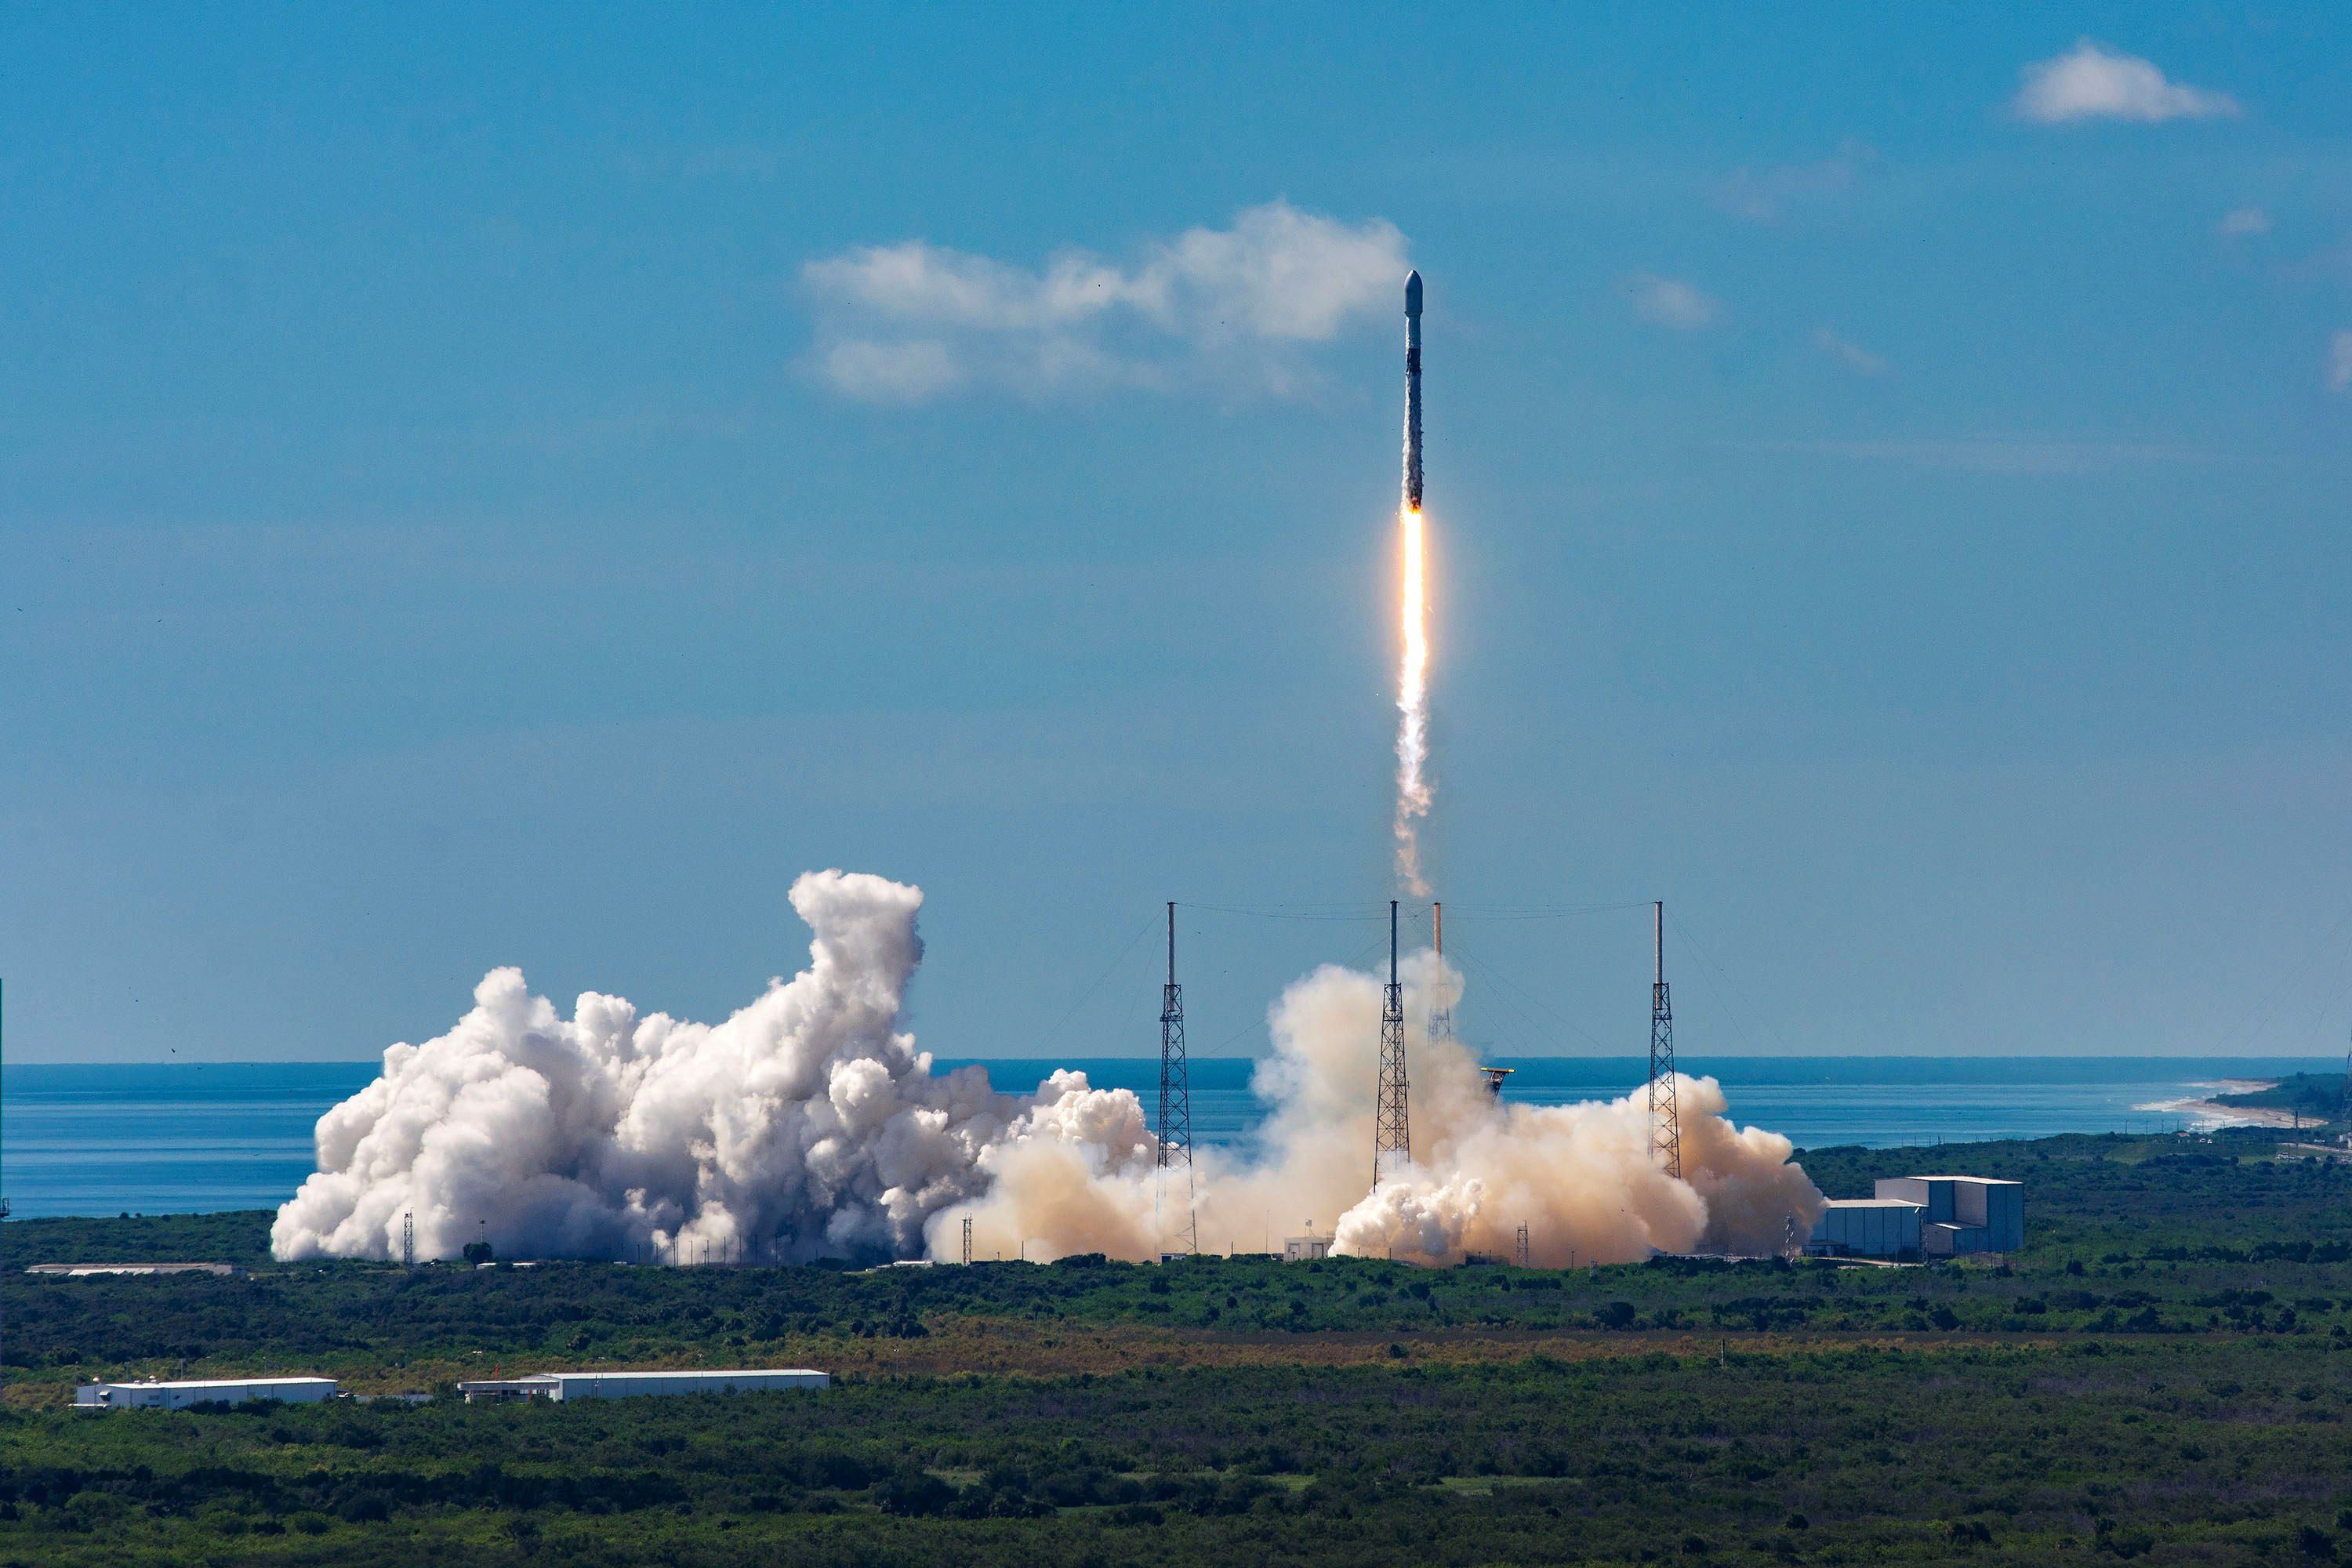 La compañía SpaceX puso el pasado mes de agosto en el espacio 58 satélites de su proyecto Starlink para crear una red de internet de alta velocidad a nivel global.